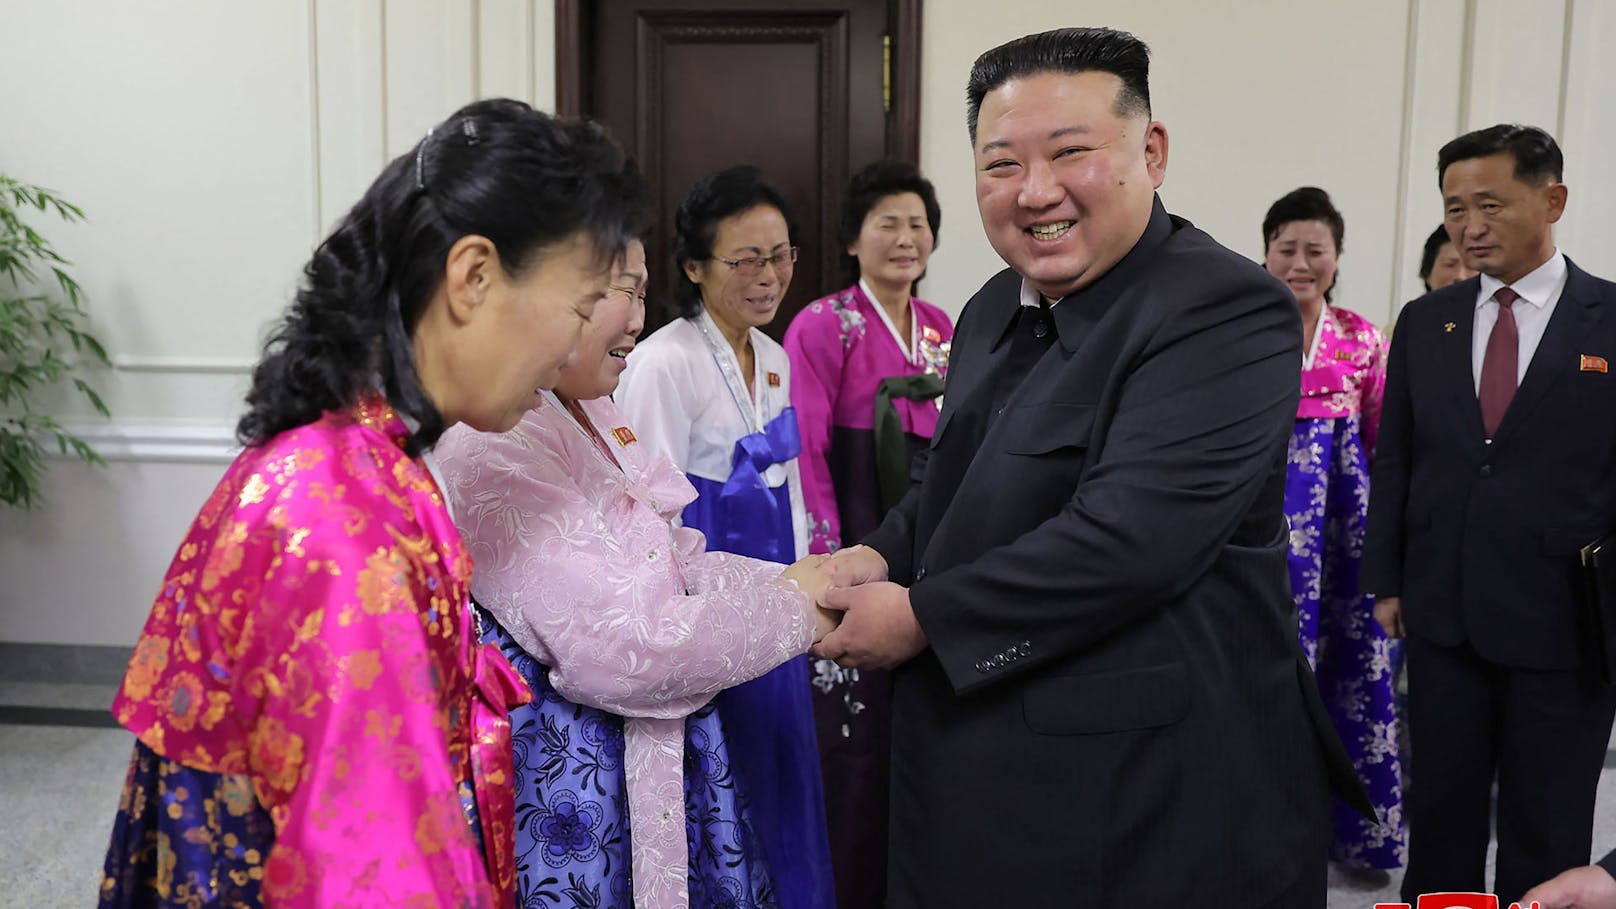 Kim Jong-un bricht in Tränen aus – alle weinen mit